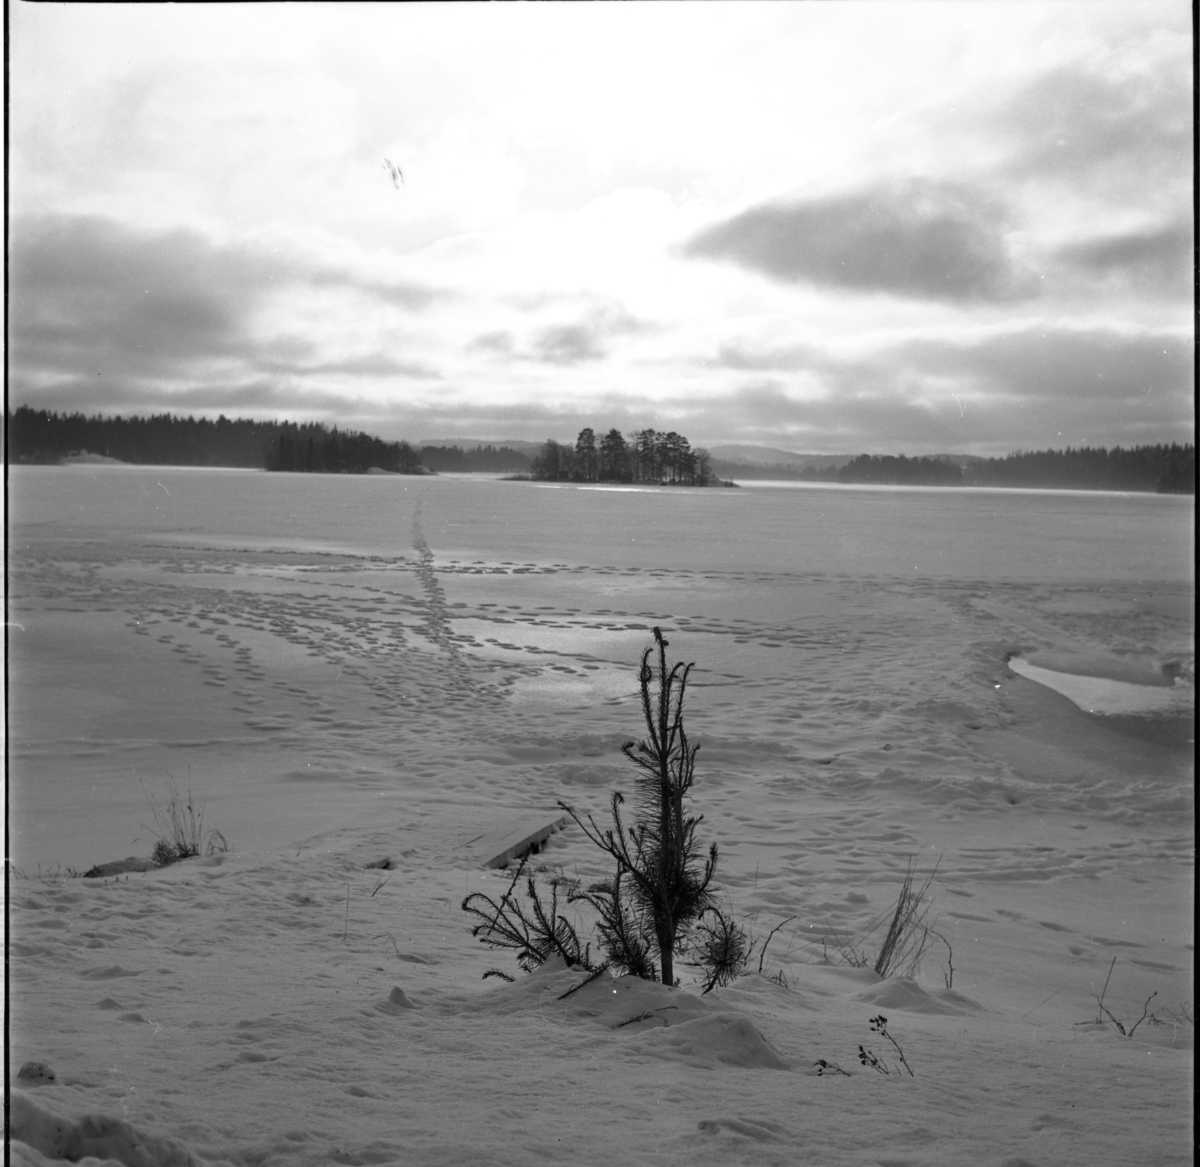 Vinterlandskap. Frusen sjö i skymningsljus, möjligen Ören i Örserum.